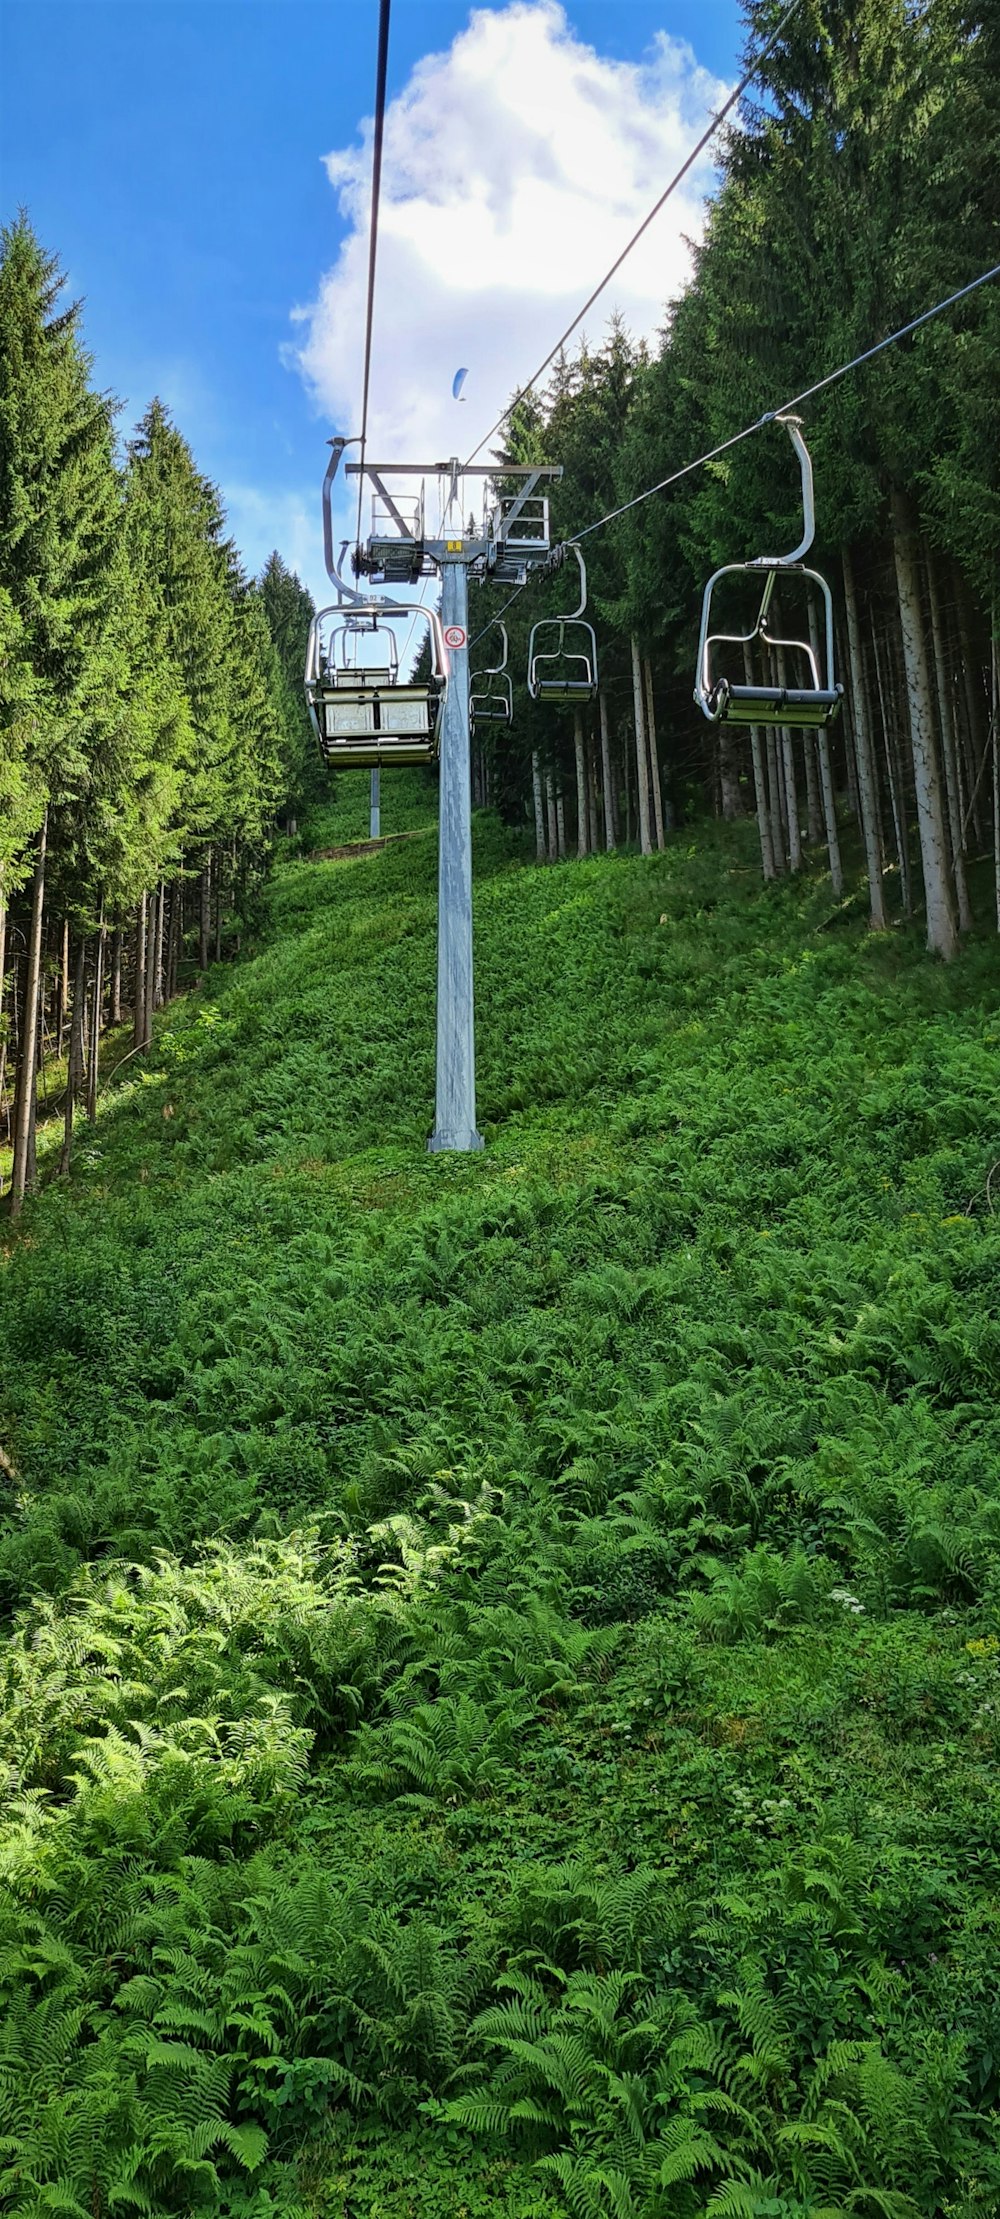 a ski lift going up a hill